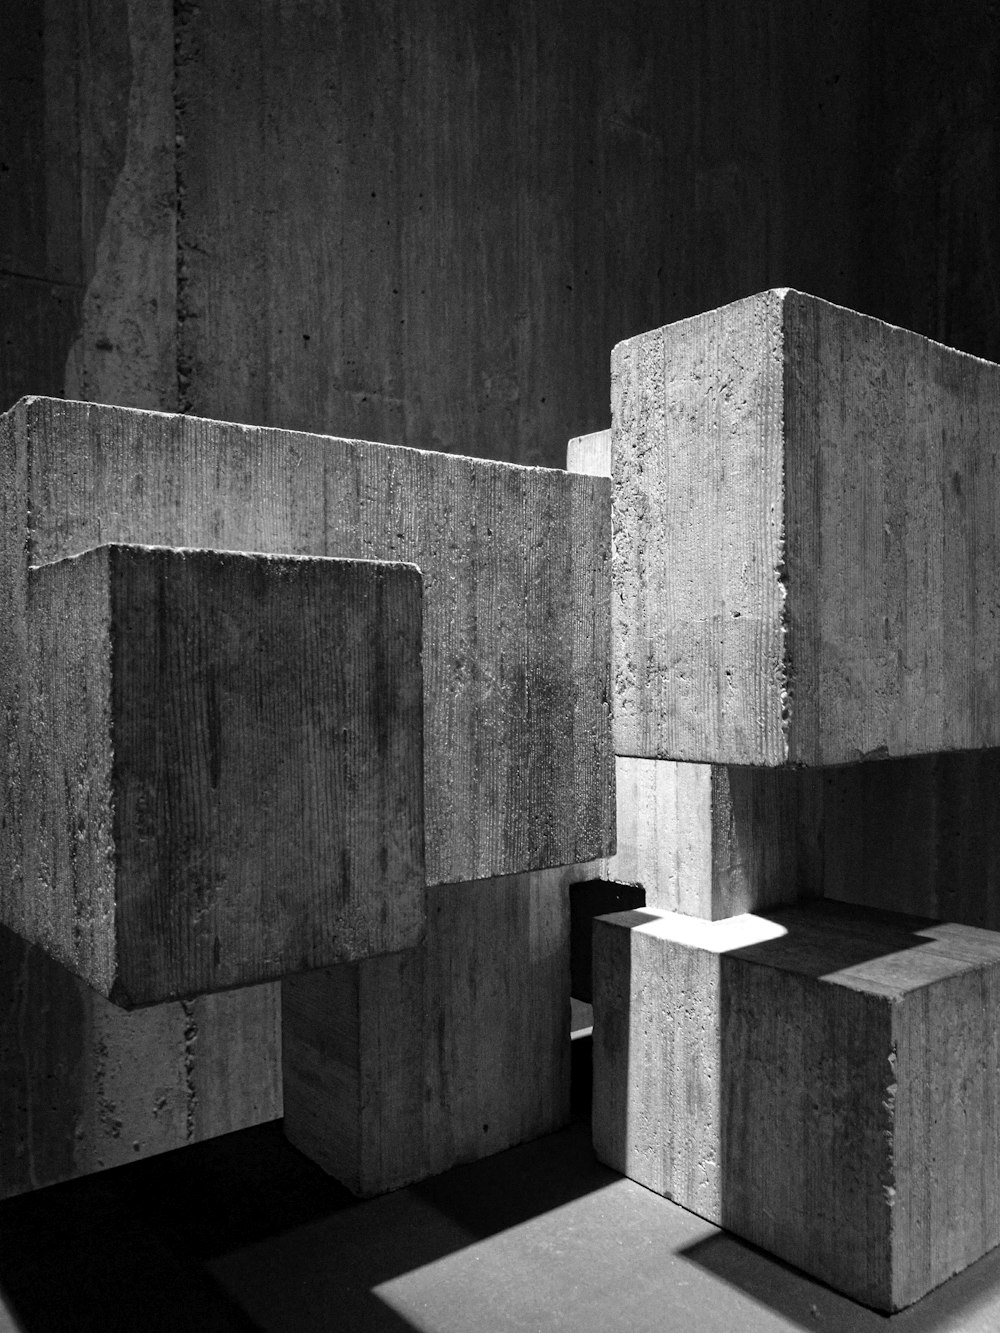 콘크리트 블록의 회색조 사진